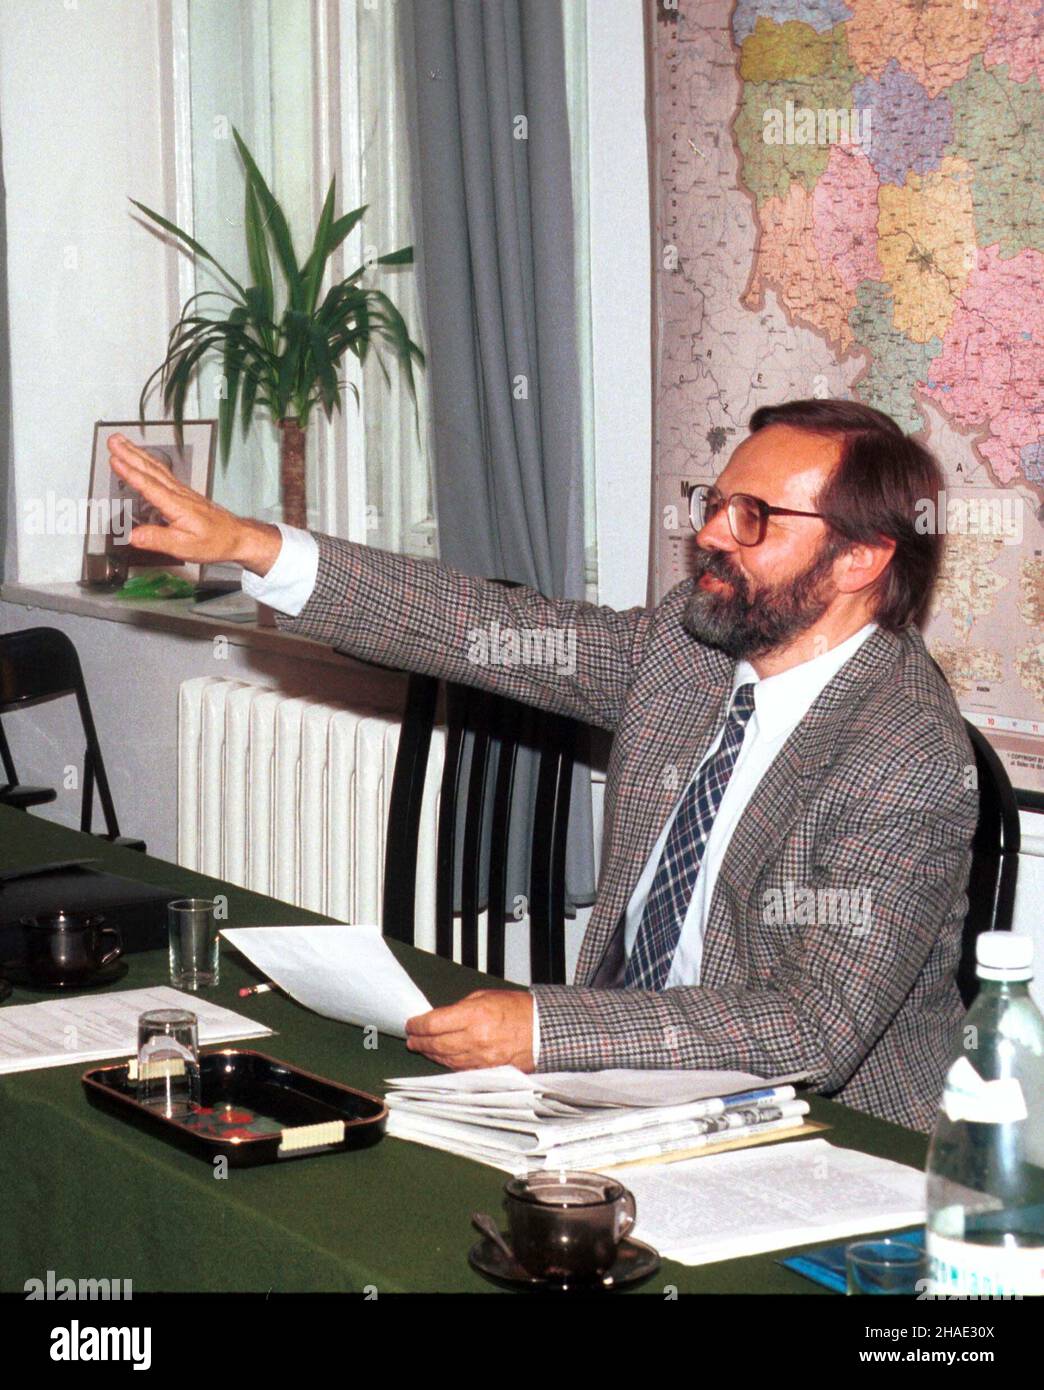 Warszawa, 10.09.1995. Szef Unii Pracy Ryszard Bugaj podczas konferencji prasowej w Warszawie. (kkk) PAP/Piotr Walczak Stock Photo